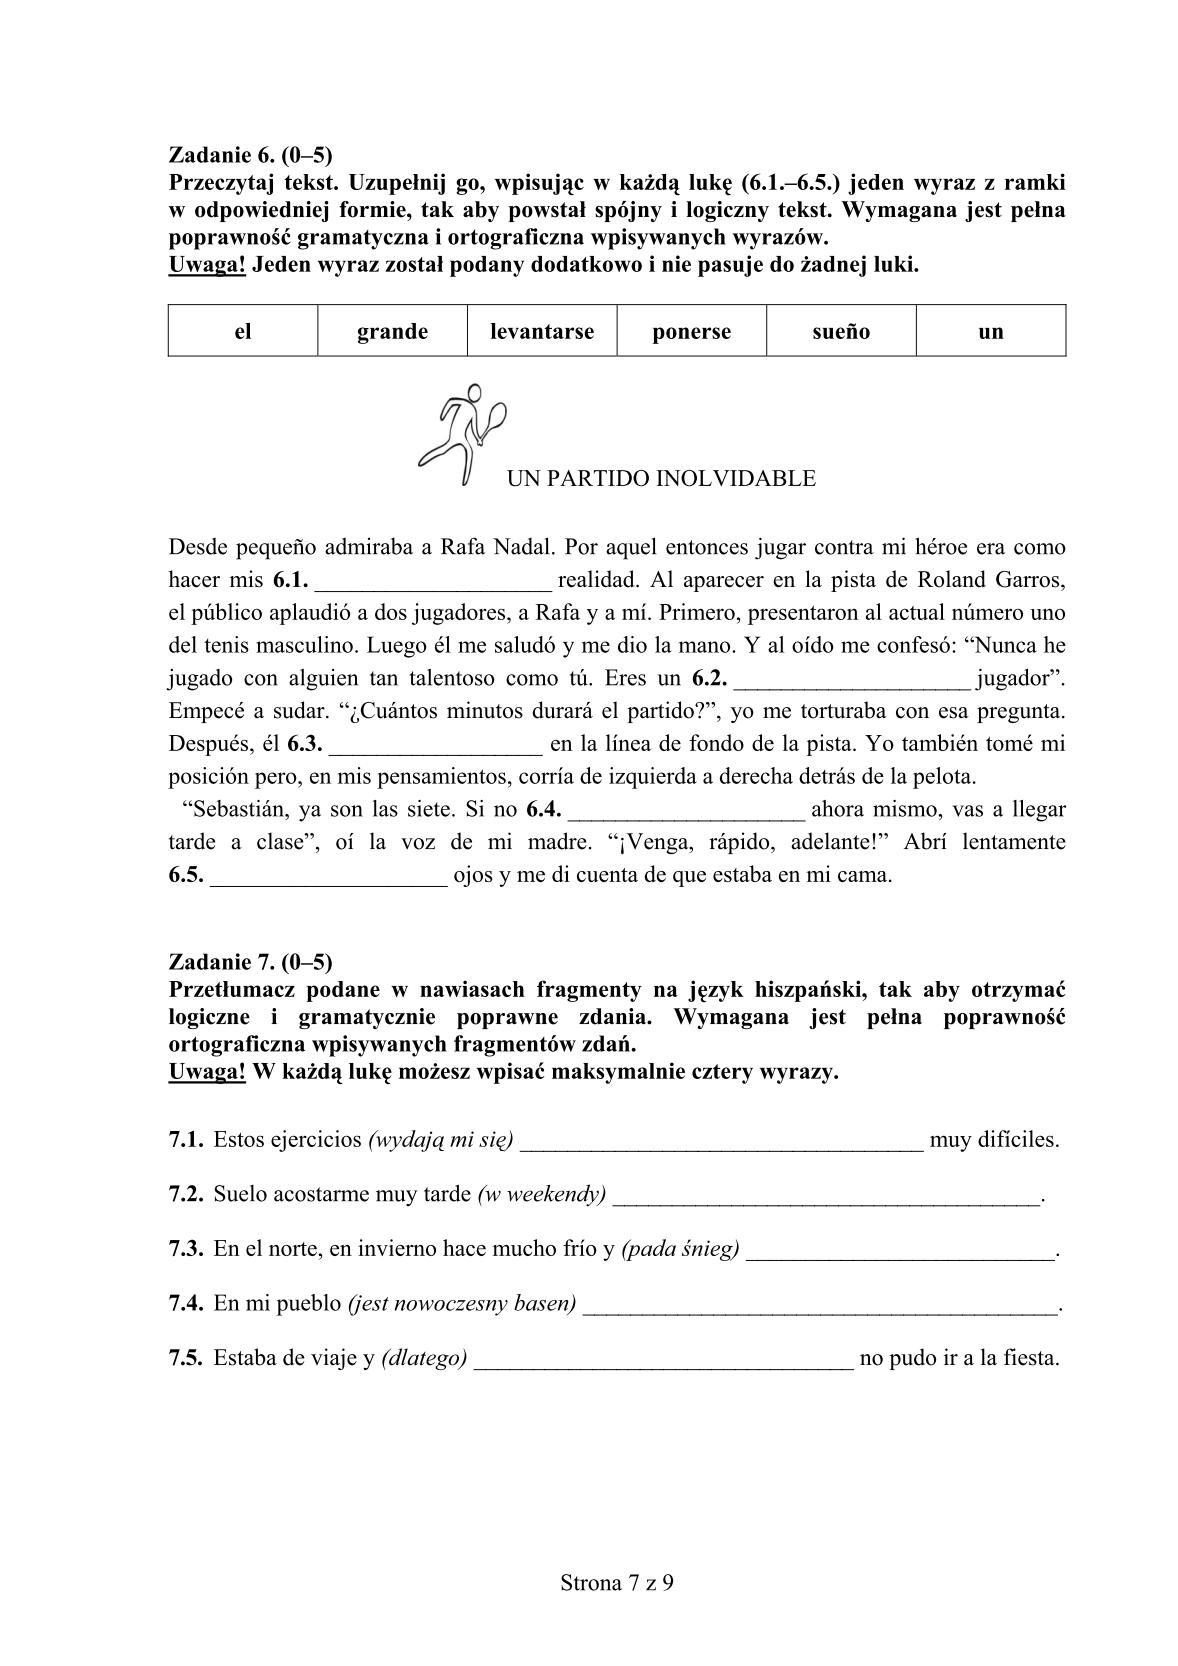 pytania-hiszpanski-poziom-rozszerzony-egzamin-gimnazjalny-25.04.2014-7